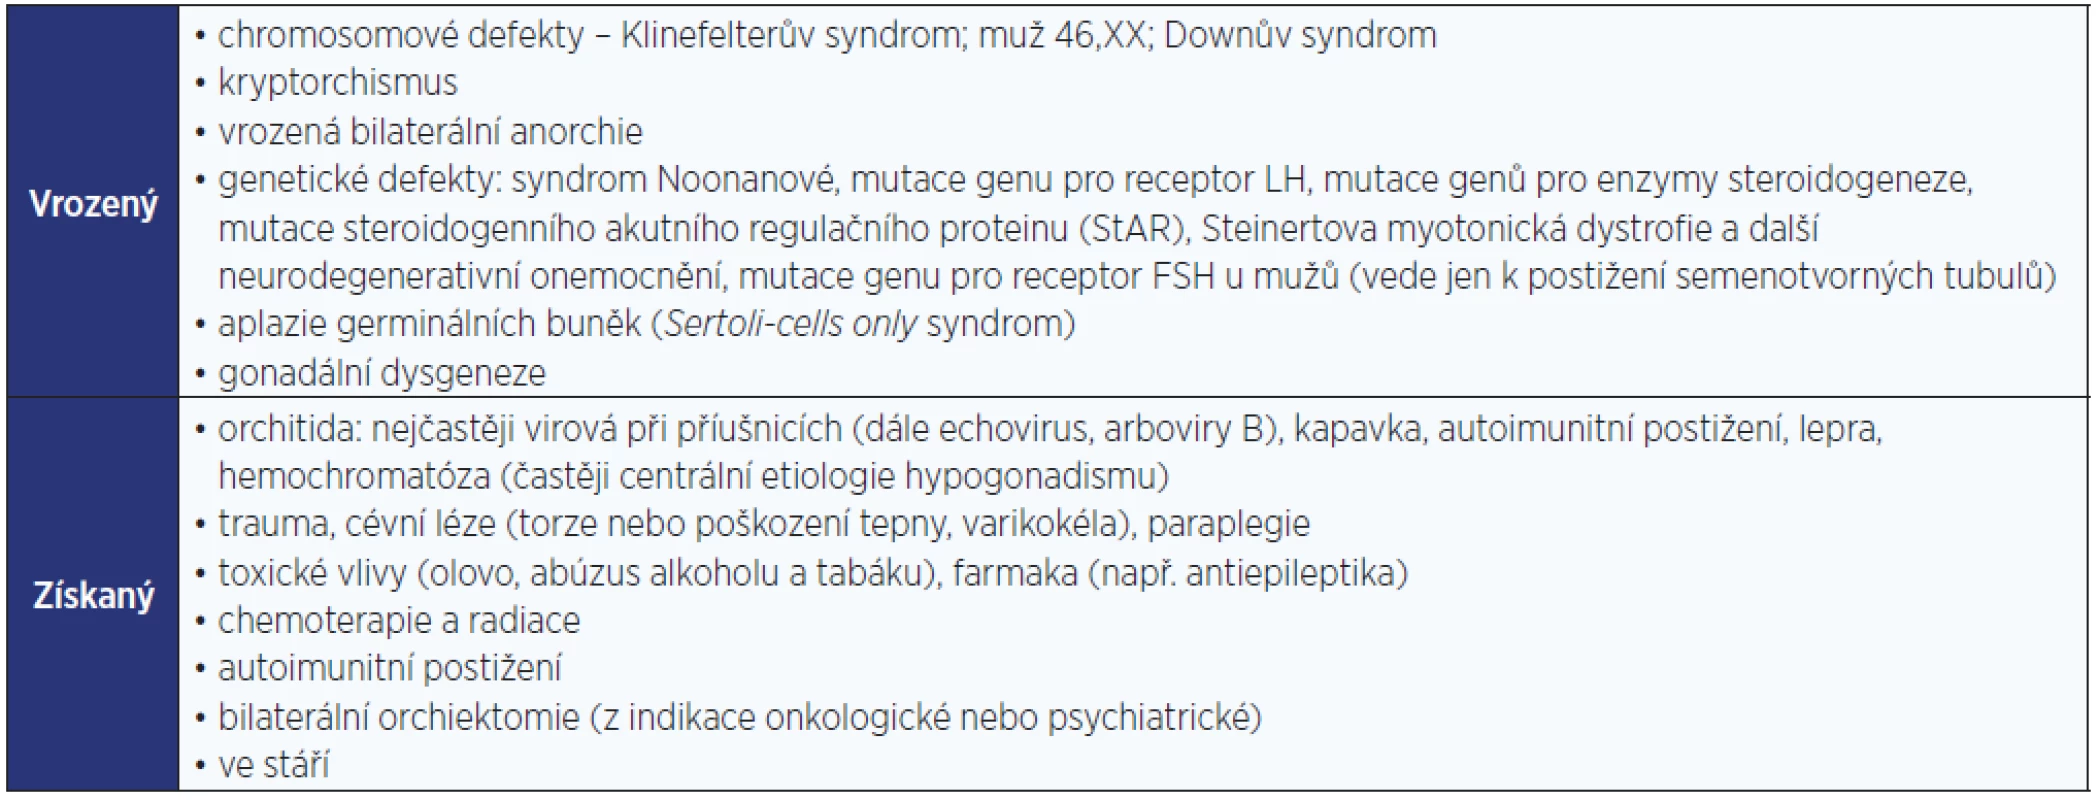 Primární (periferní, hypergonadotropní) hypogonadismus u mužů (modifikováno dle: Hána, 2014 [36])